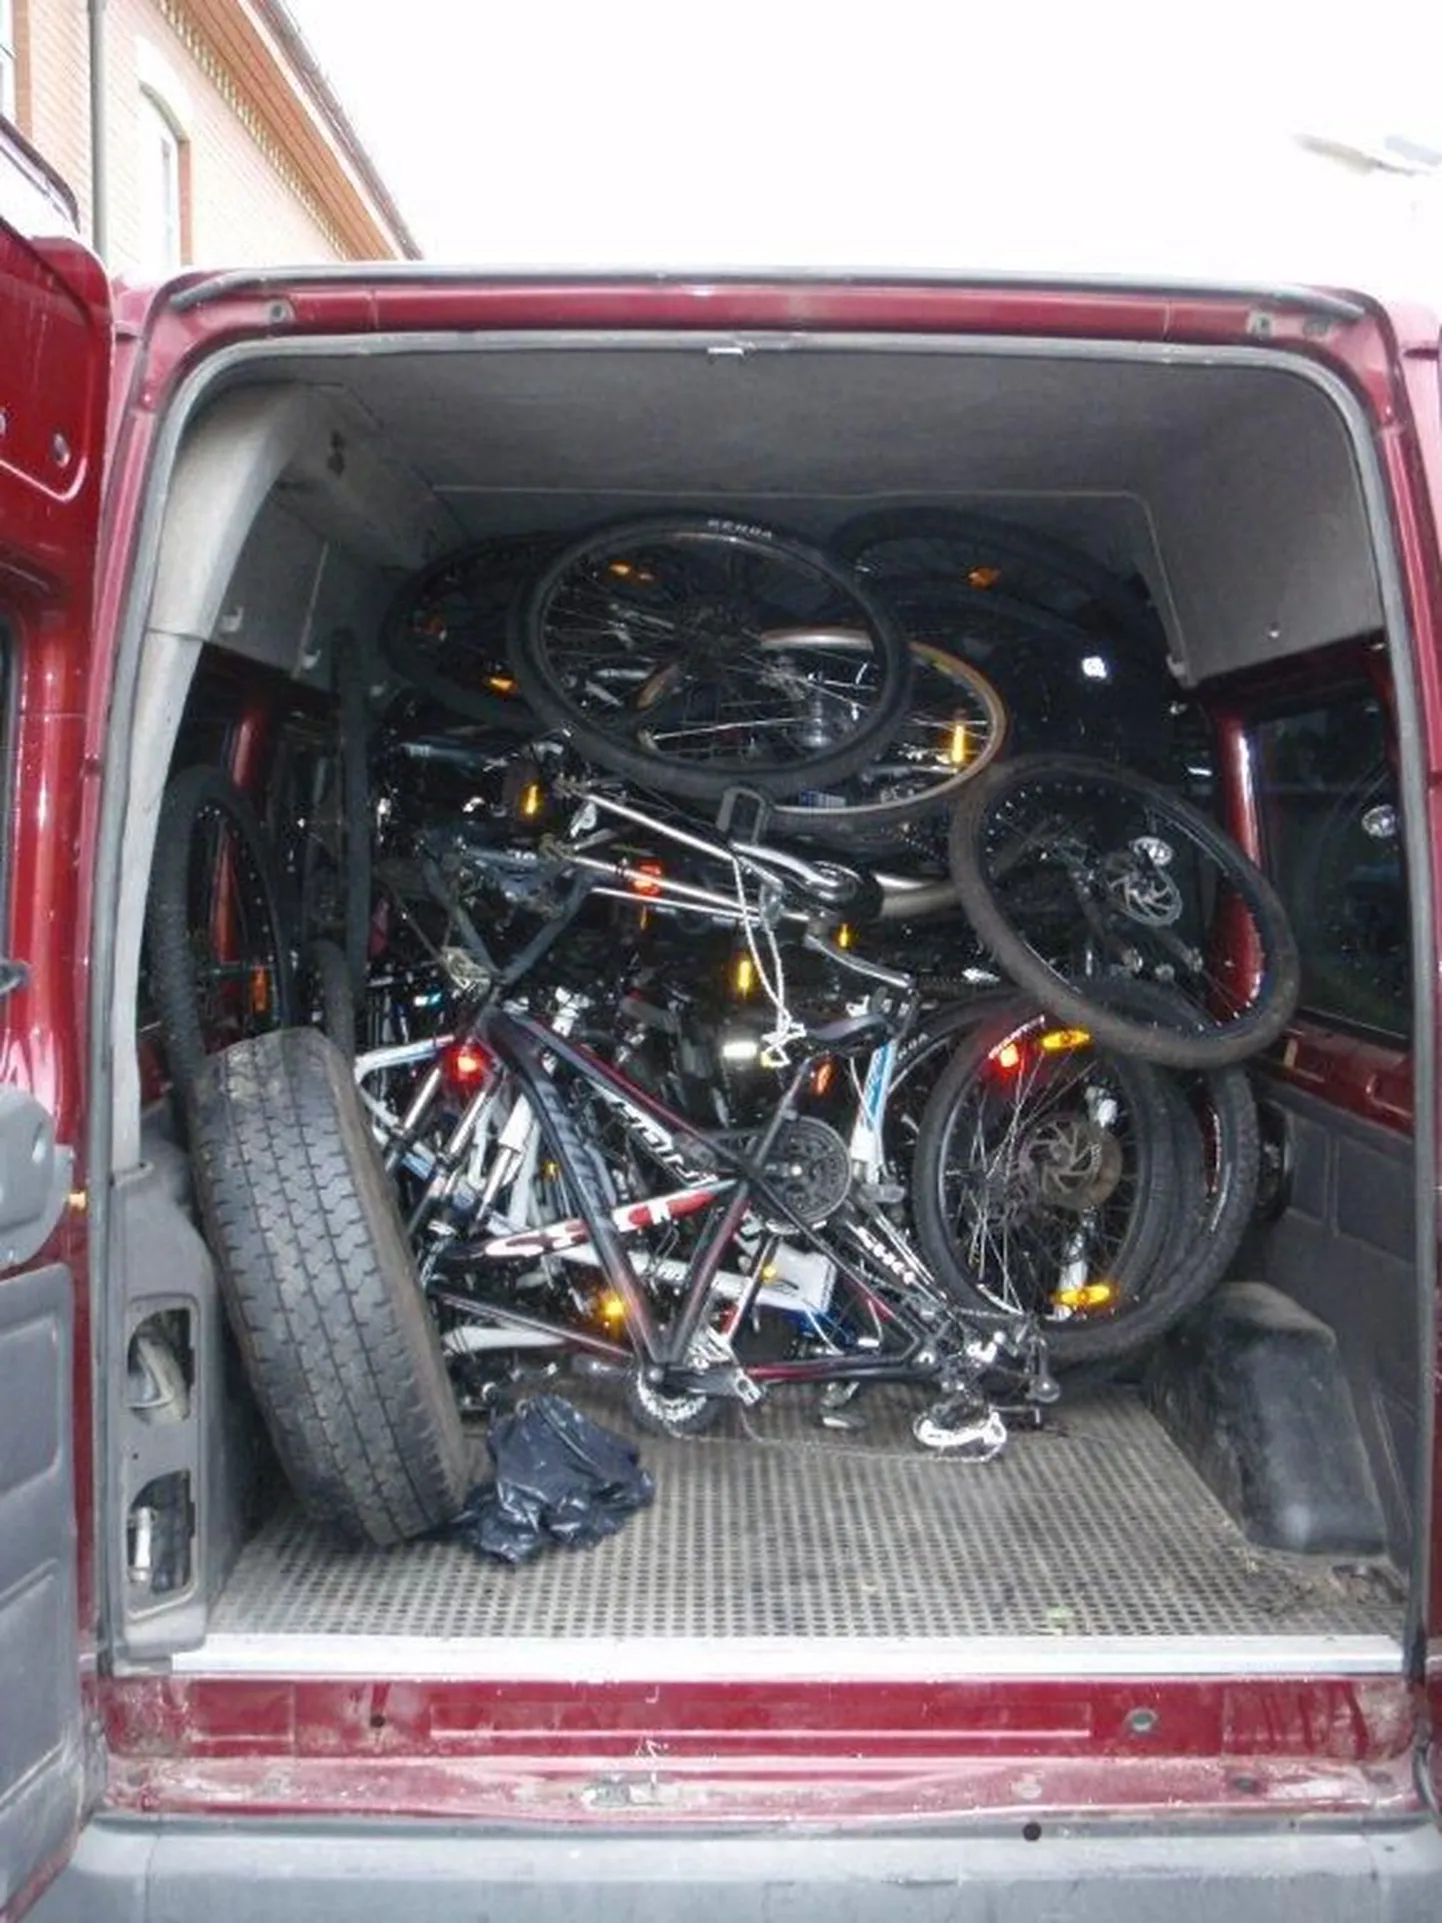 Politsei pidas juuli alguses Pärnumaal kinni Leetu teel olnud kaubiku, kust leiti 21 Norrast varastatud jalgrattaraami ja -pöida.